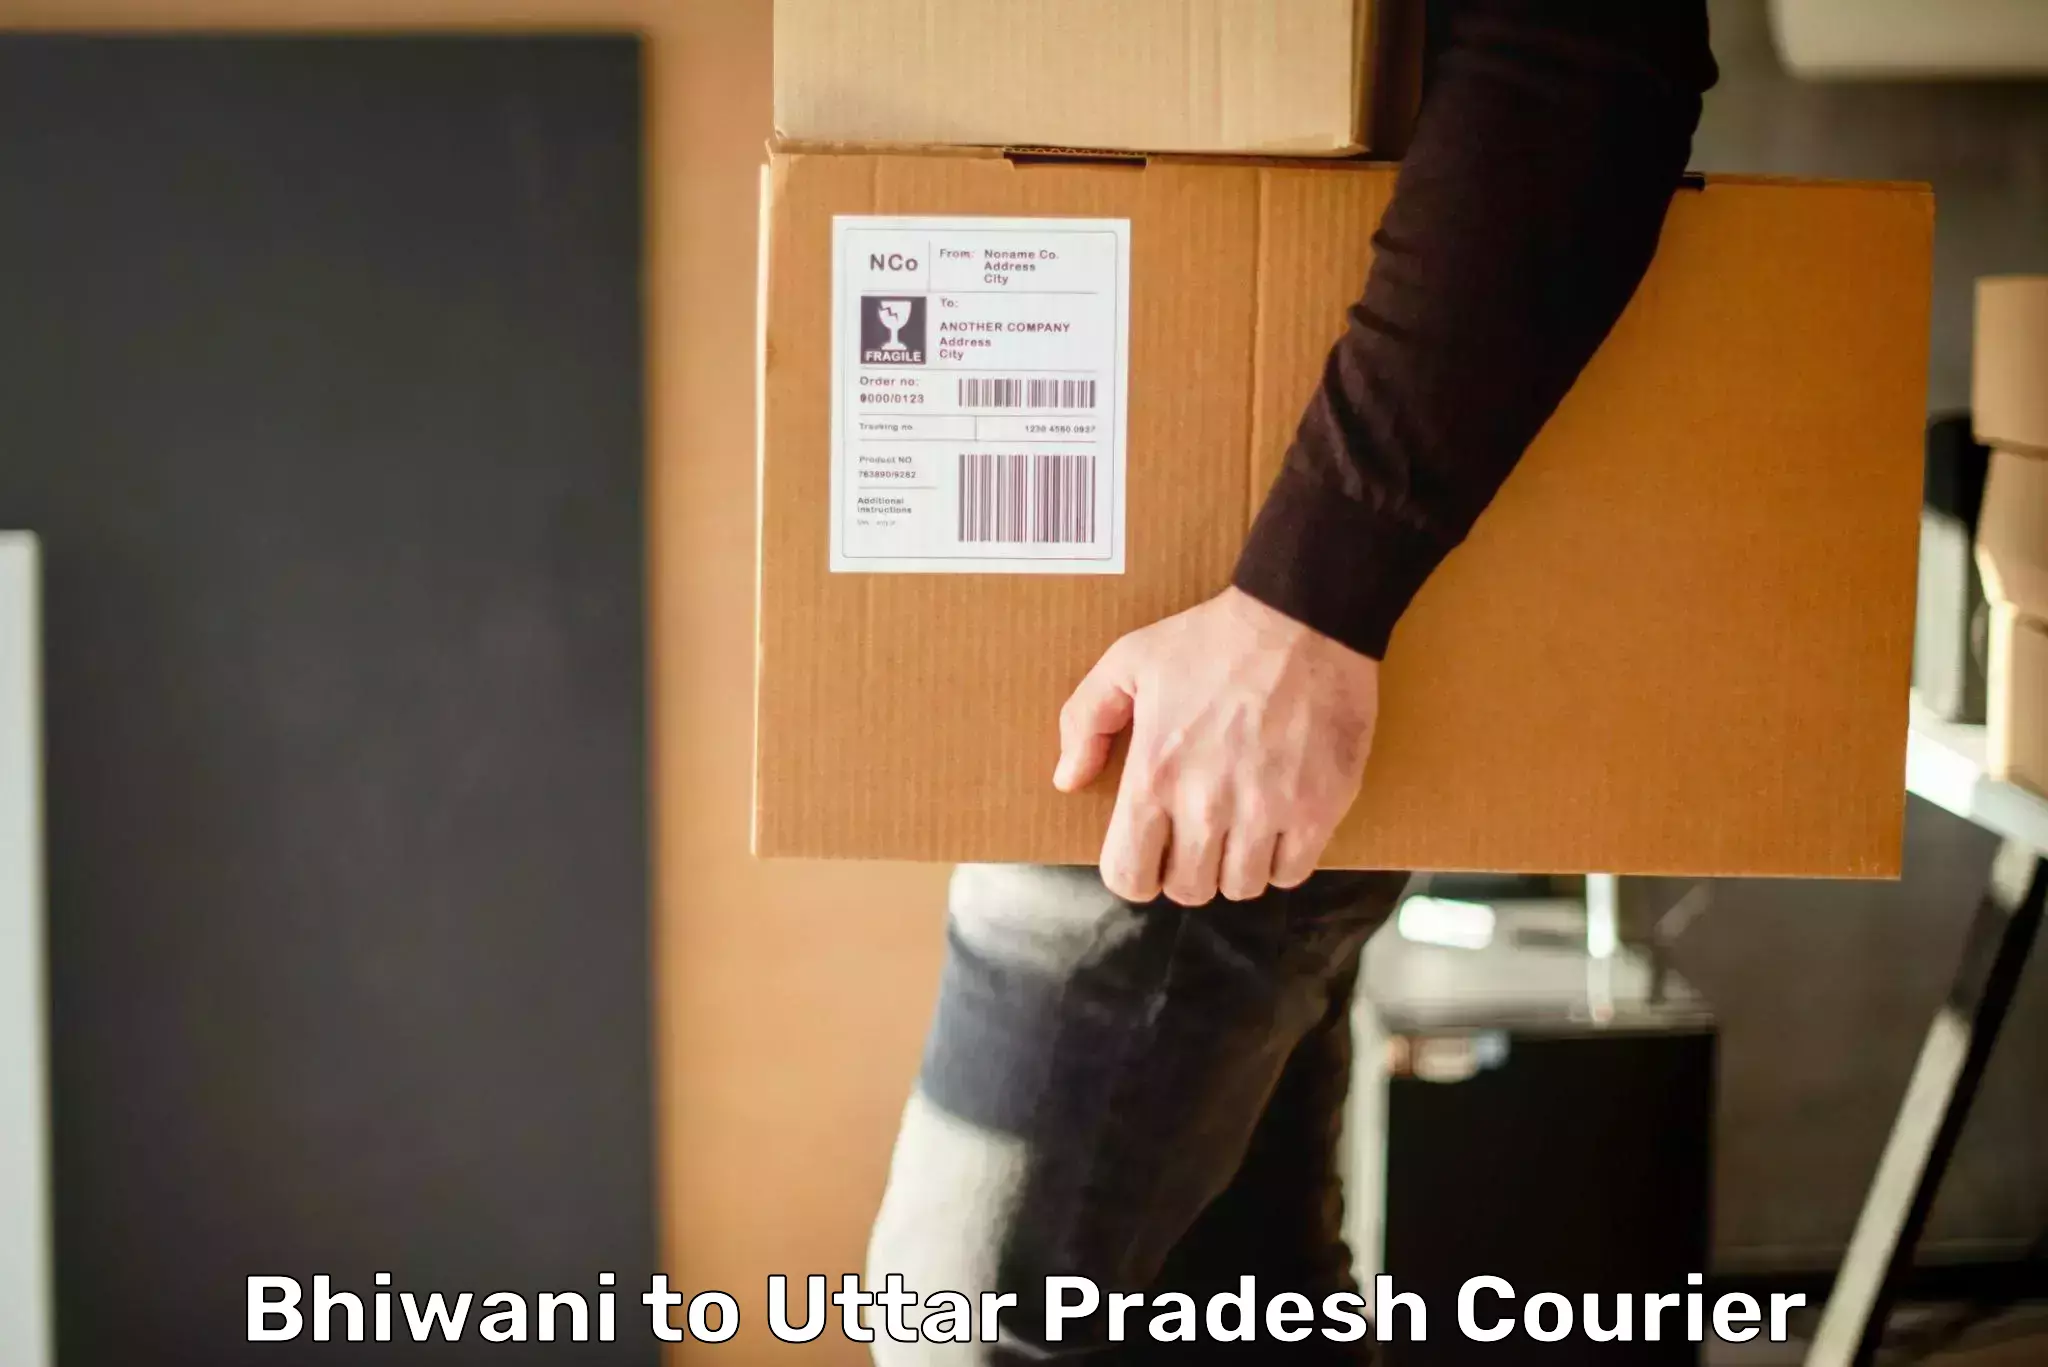 Speedy delivery service Bhiwani to Uttar Pradesh